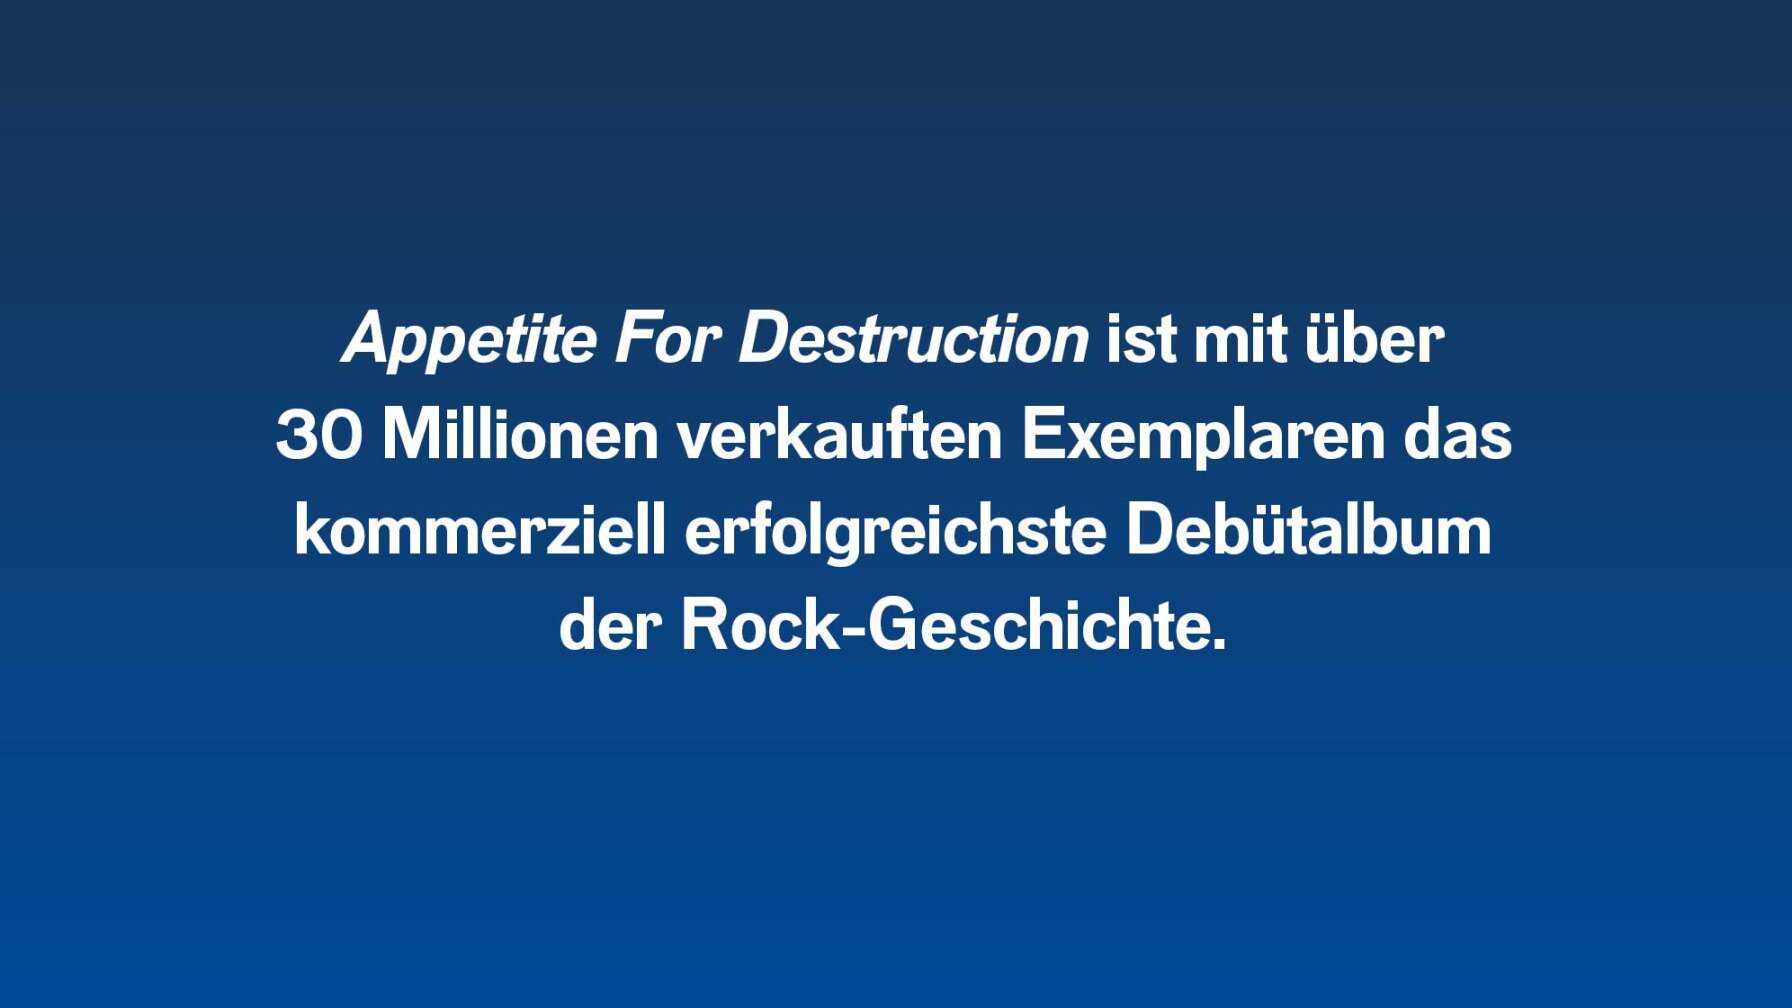 Appetite For Destruction ist mit über 30 Millionen verkauften Exemplaren das kommerziell erfolgreichste Debütalbum der Rock-Geschichte.